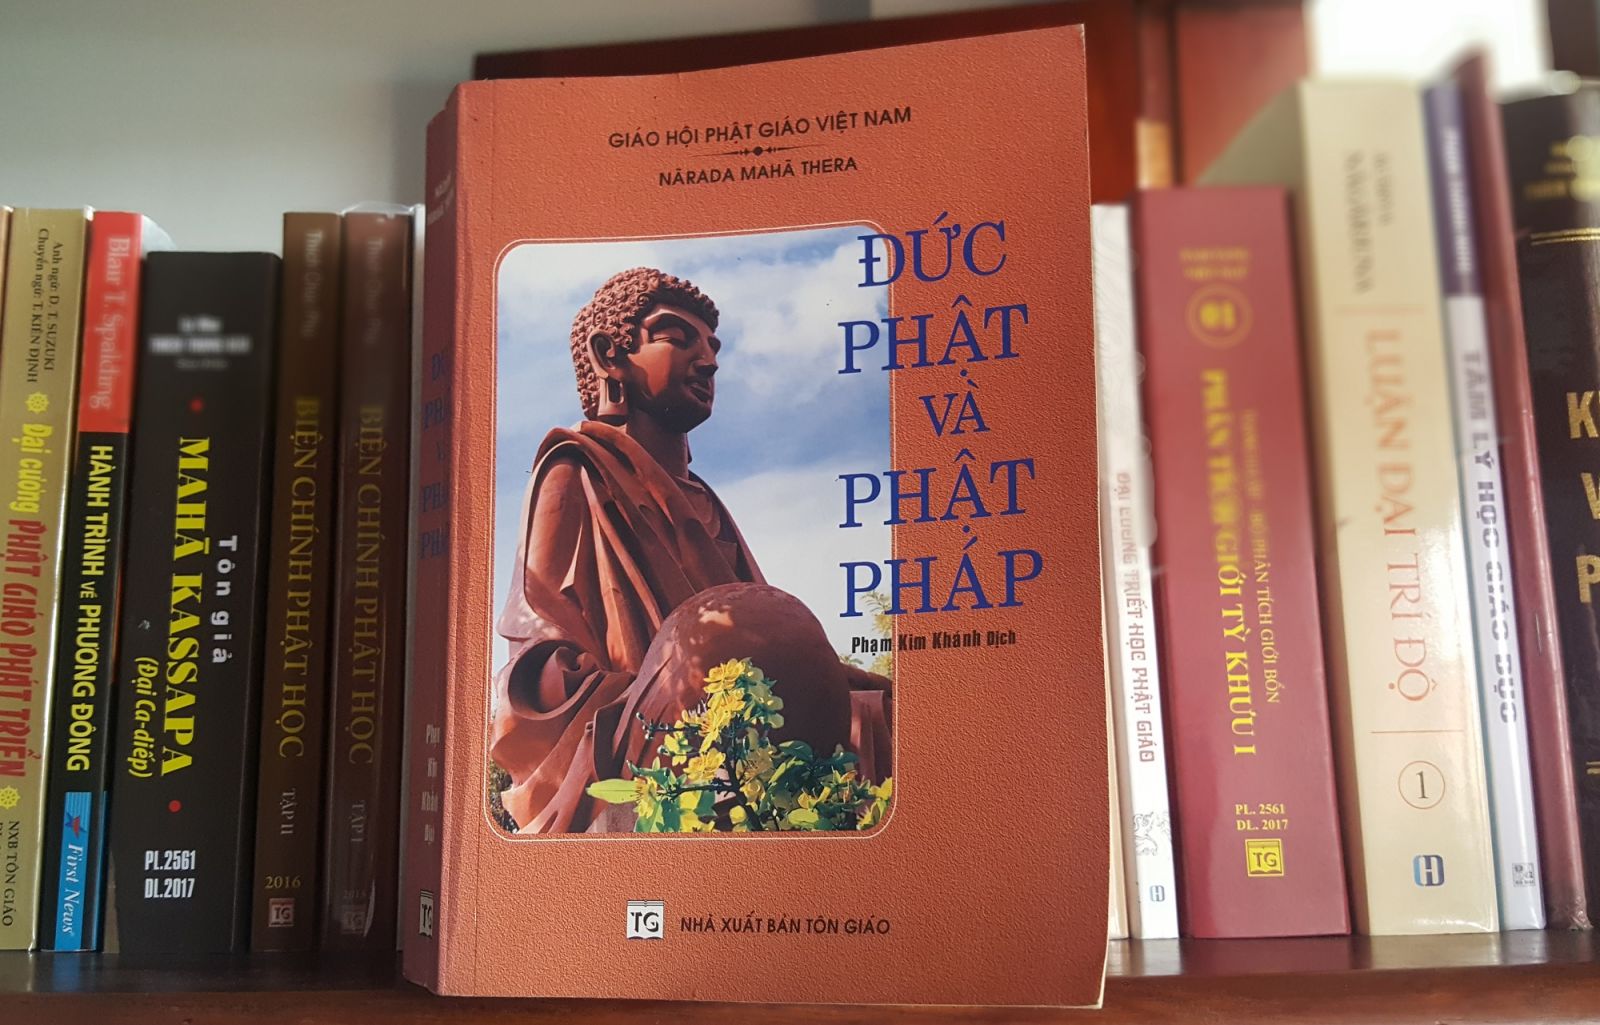 Giới thiệu sách: Đức Phật và Phật Pháp